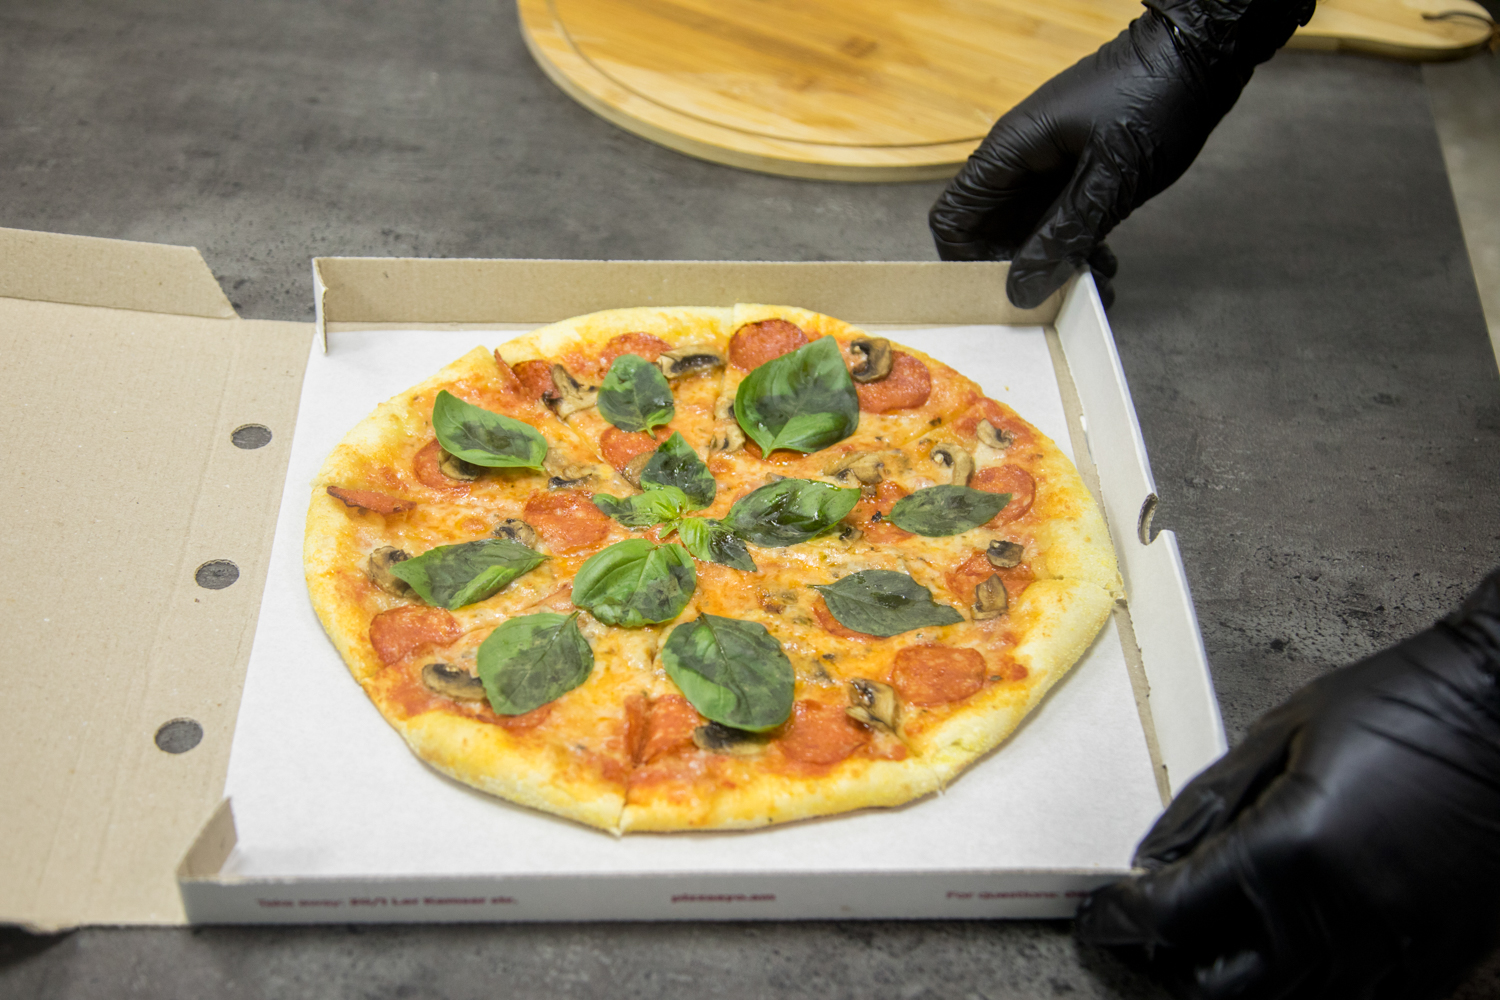 Երեւակայելու եւ սեփական պիցցան հավաքելու հնարավորություն տվող Pizza Ayo-ն